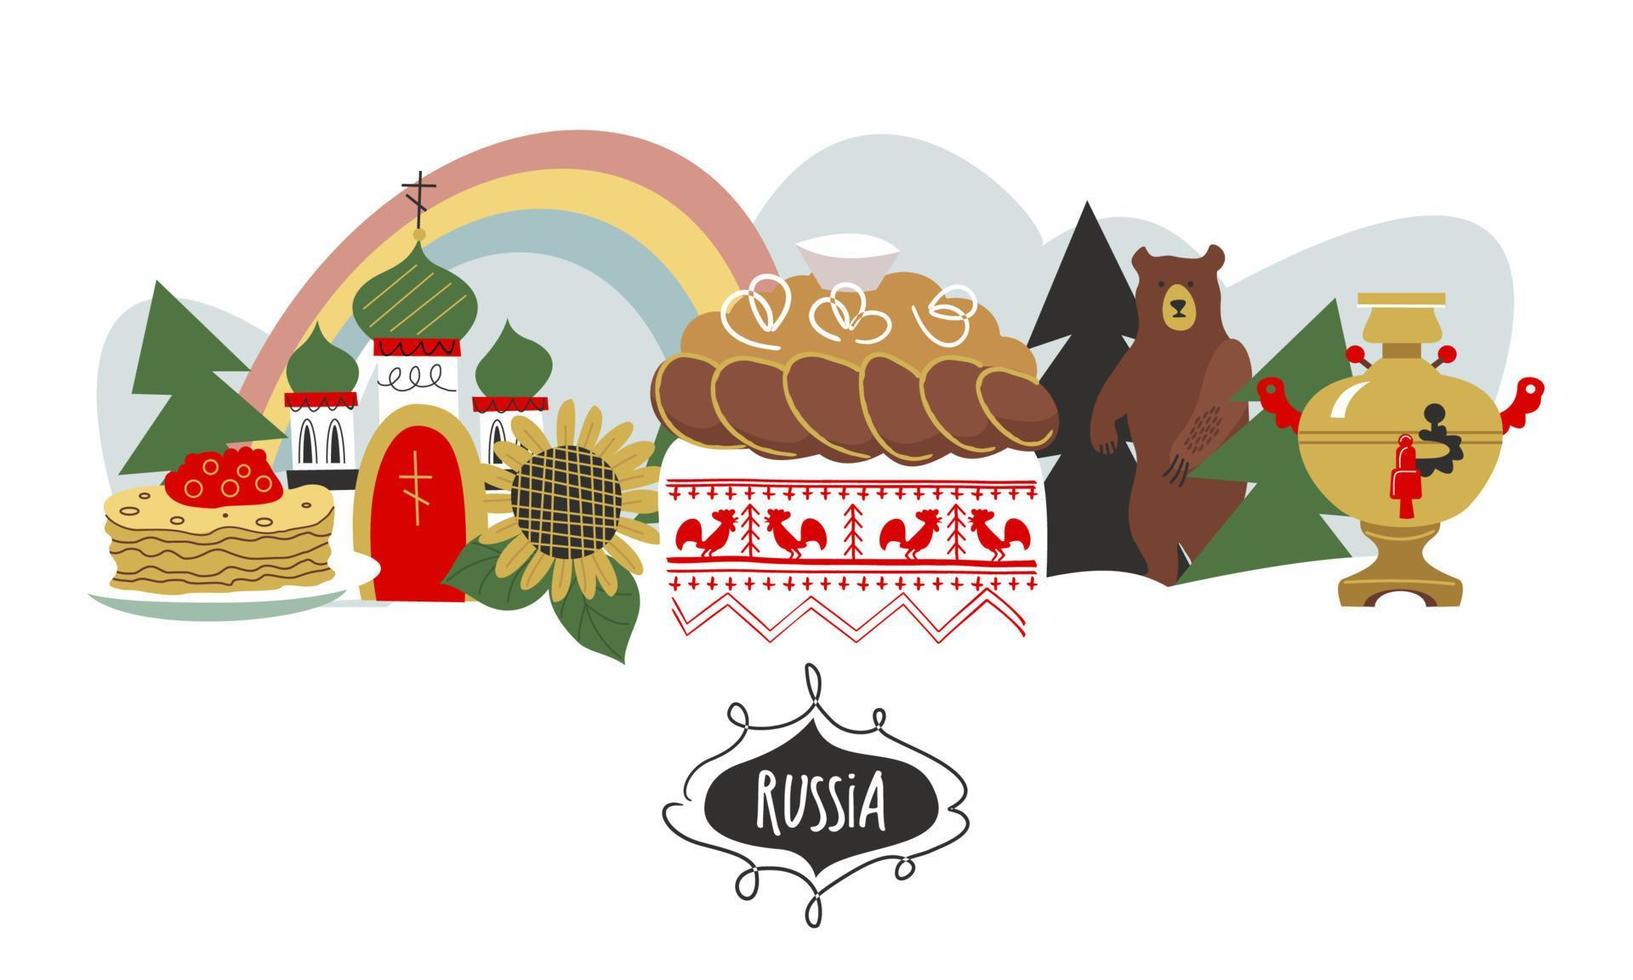 Ryssland. Rysslands sevärdheter och symboler för landet. vektor illustration. en uppsättning element för att skapa din design.